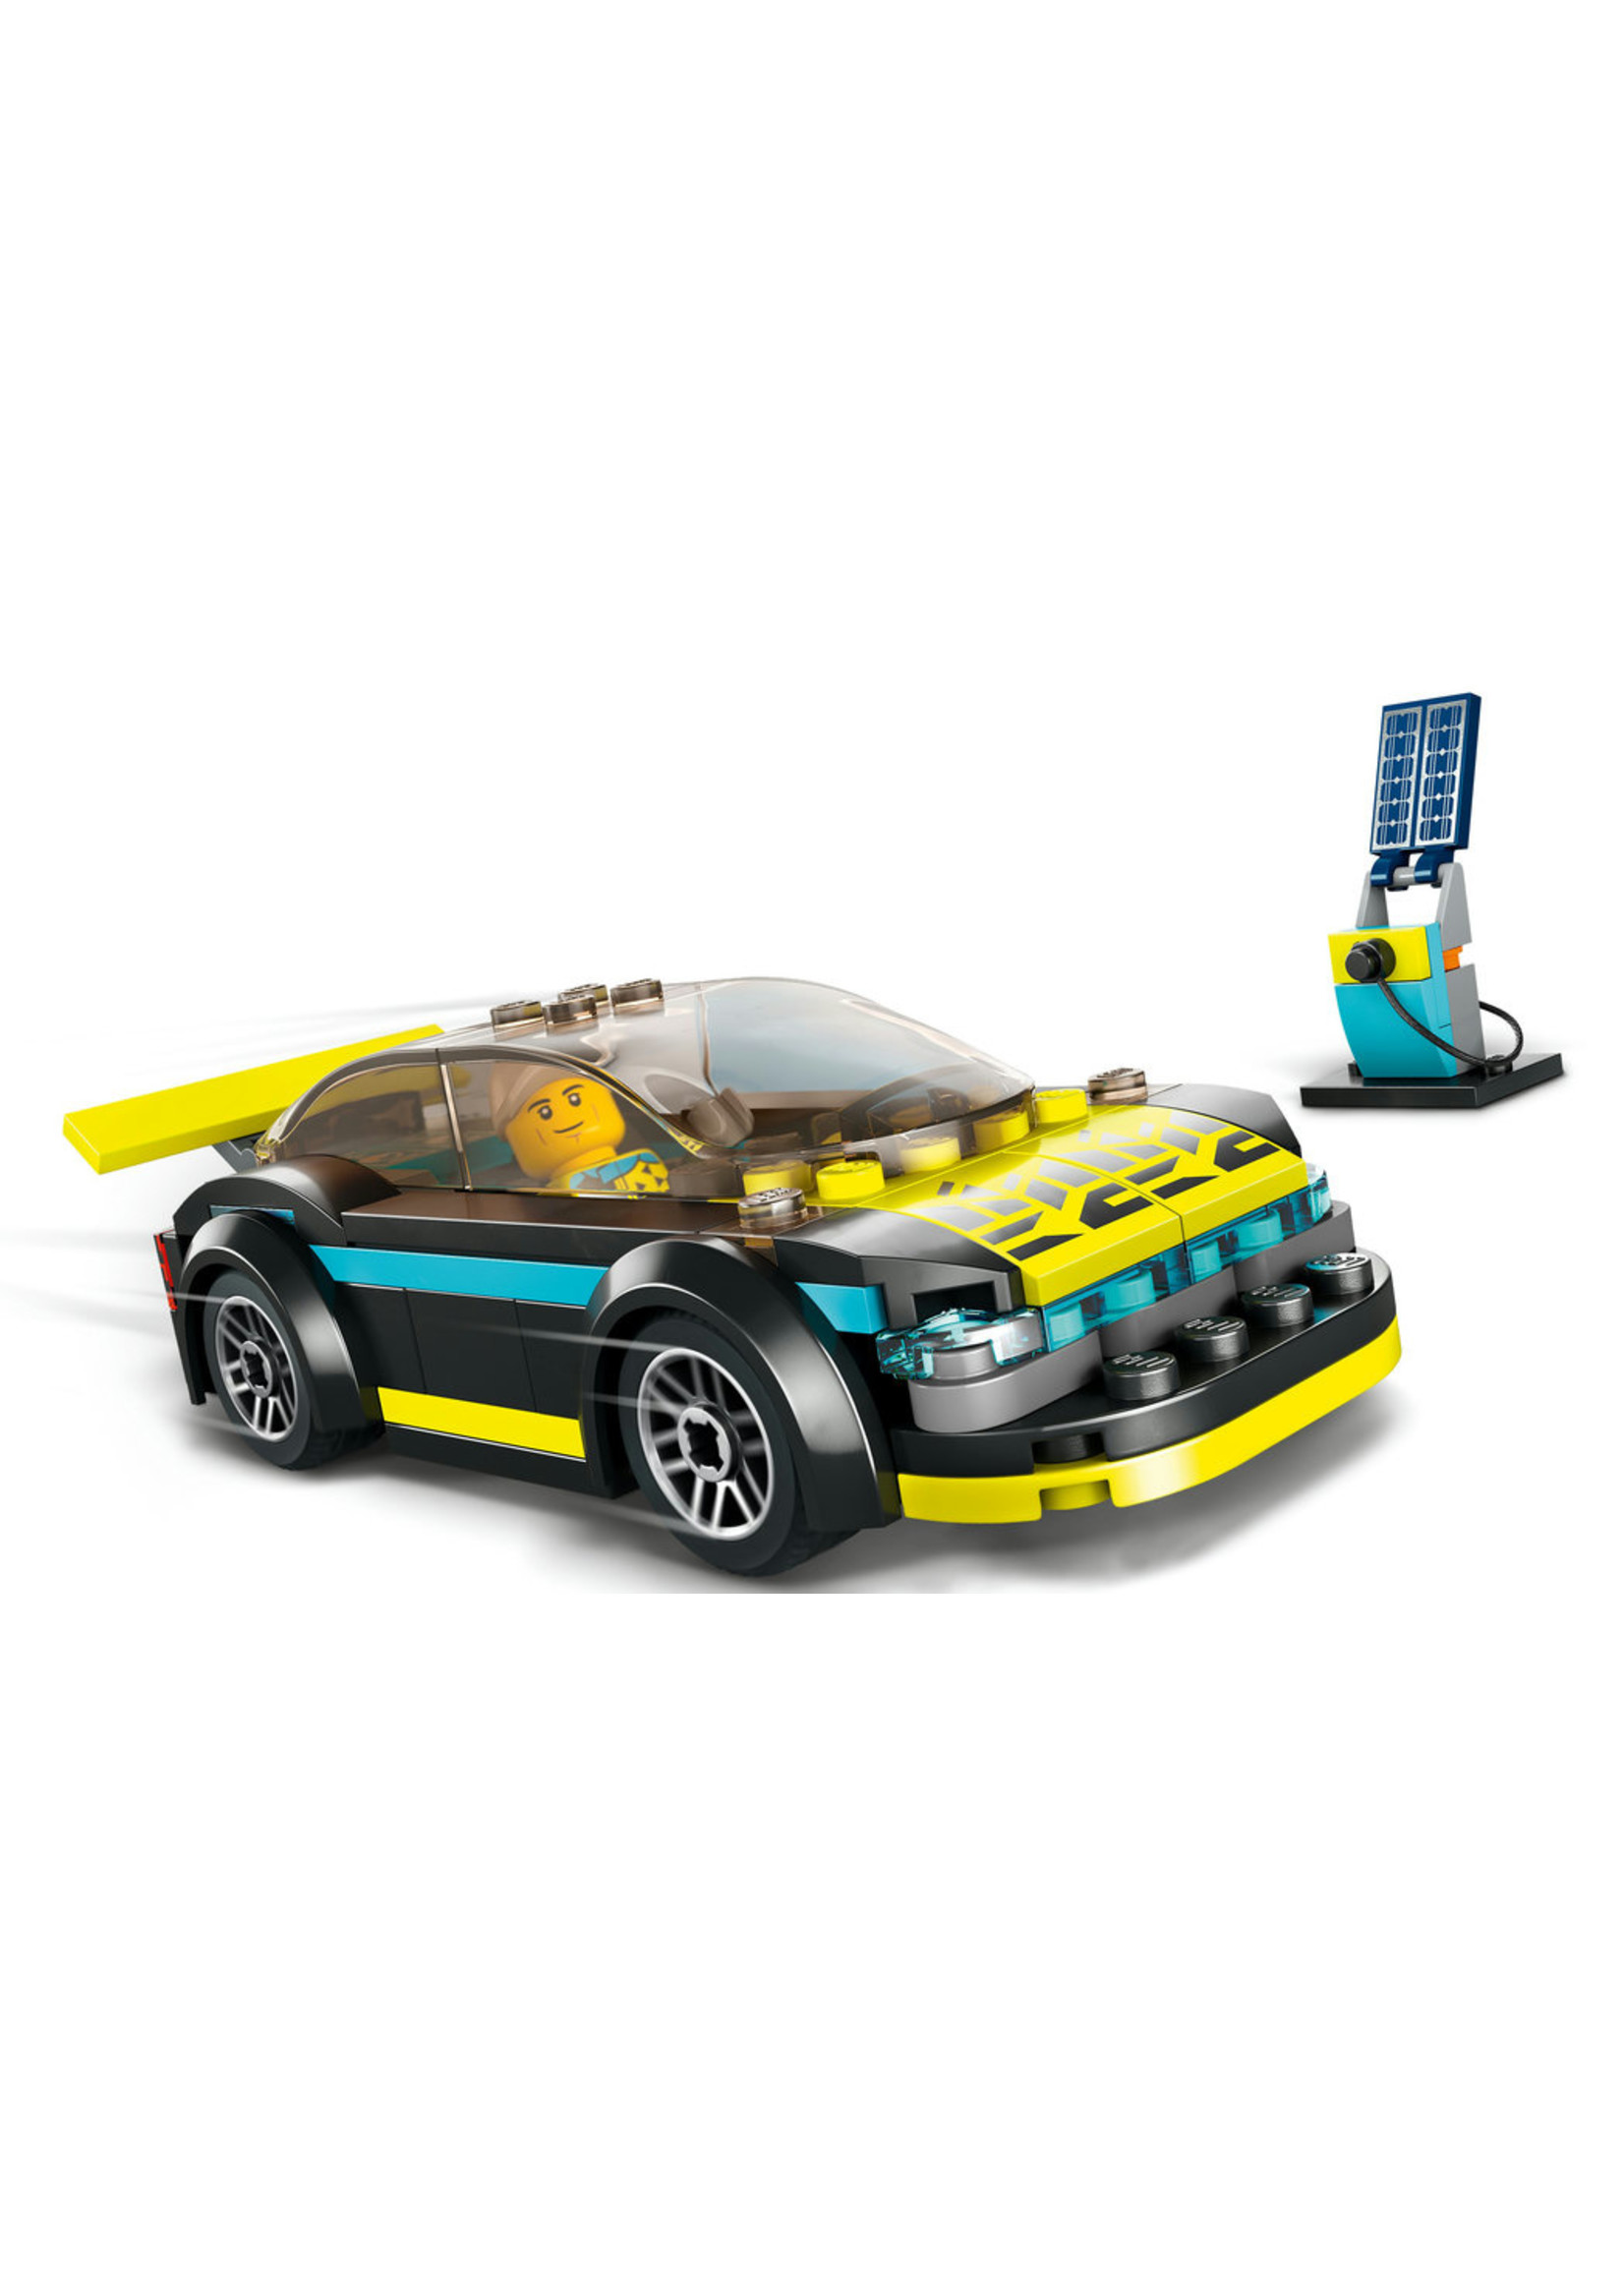 LEGO 60383 - Electric Sports Car